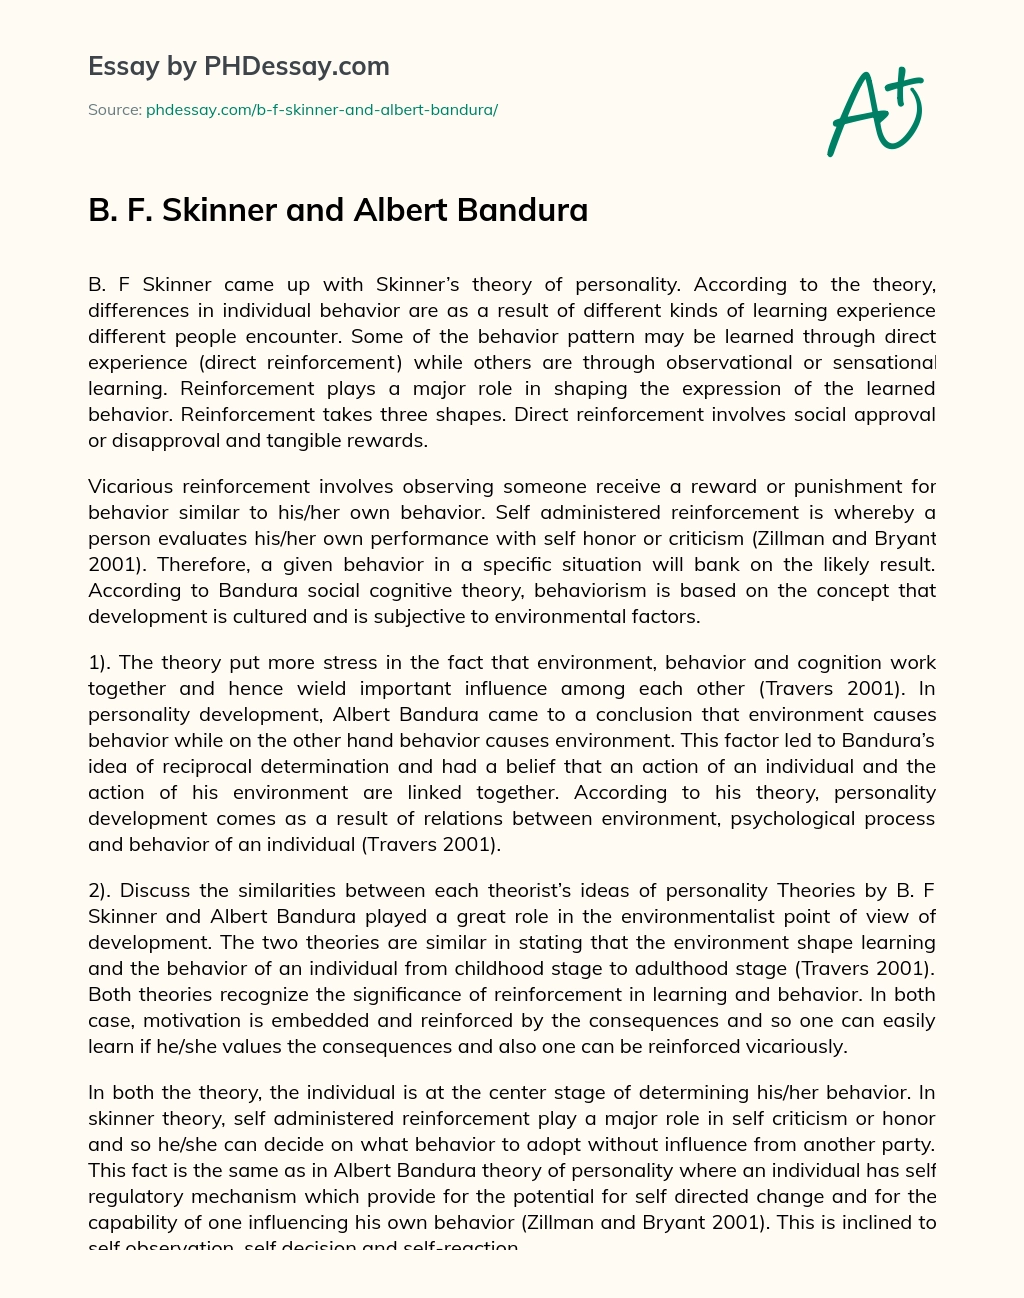 B. F. Skinner and Albert Bandura essay